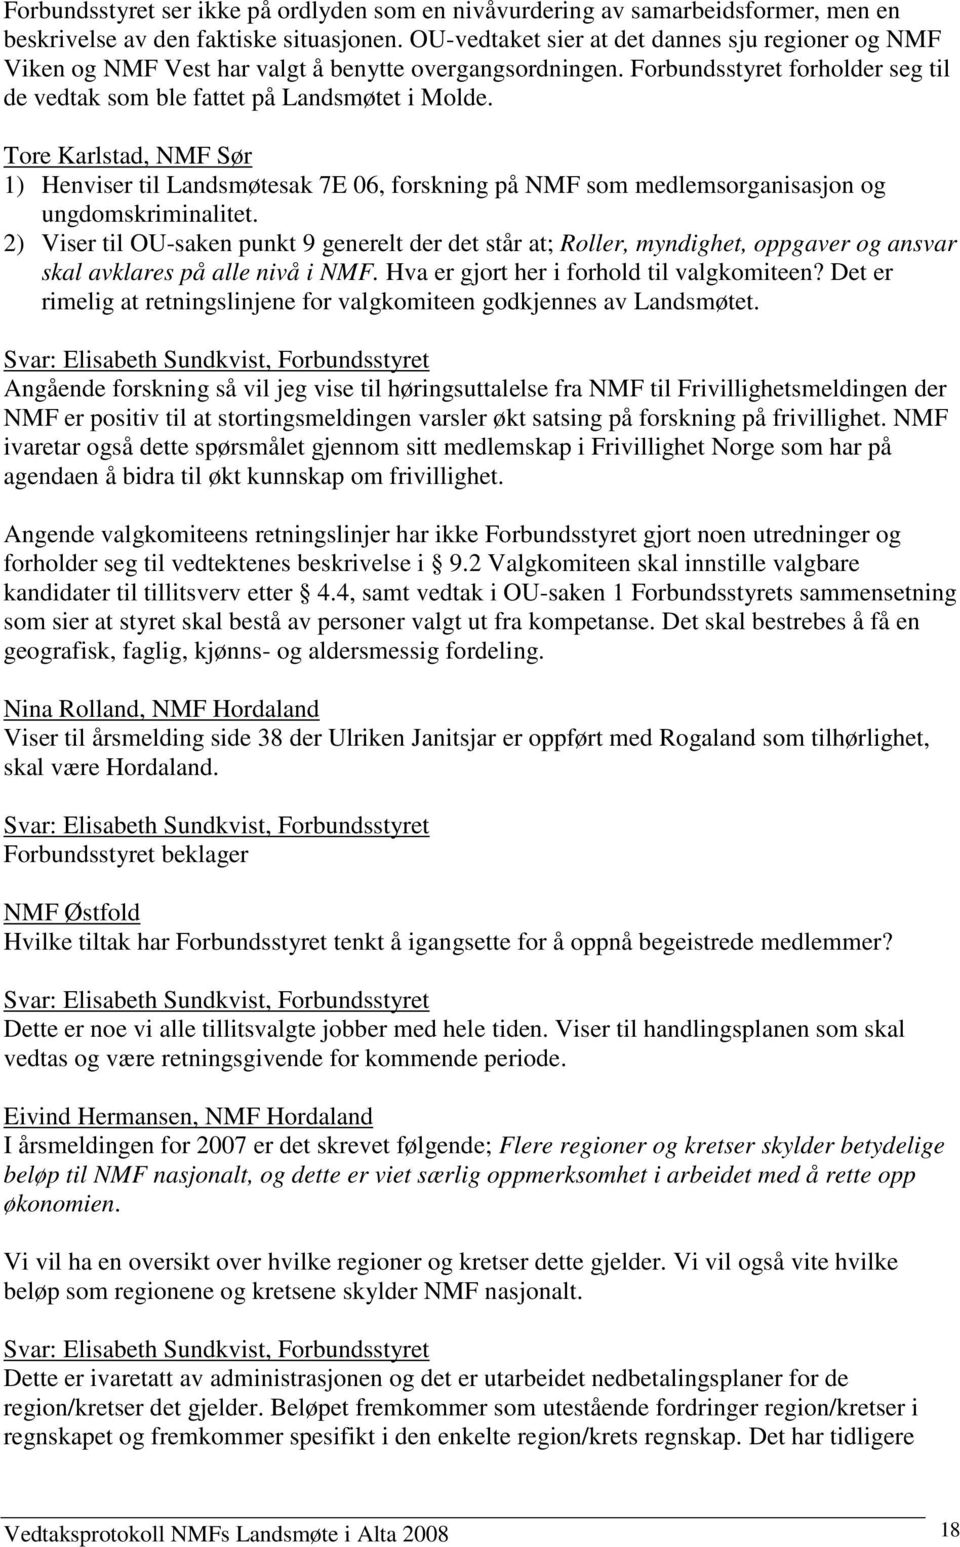 Tore Karlstad, NMF Sør 1) Henviser til Landsmøtesak 7E 06, forskning på NMF som medlemsorganisasjon og ungdomskriminalitet.